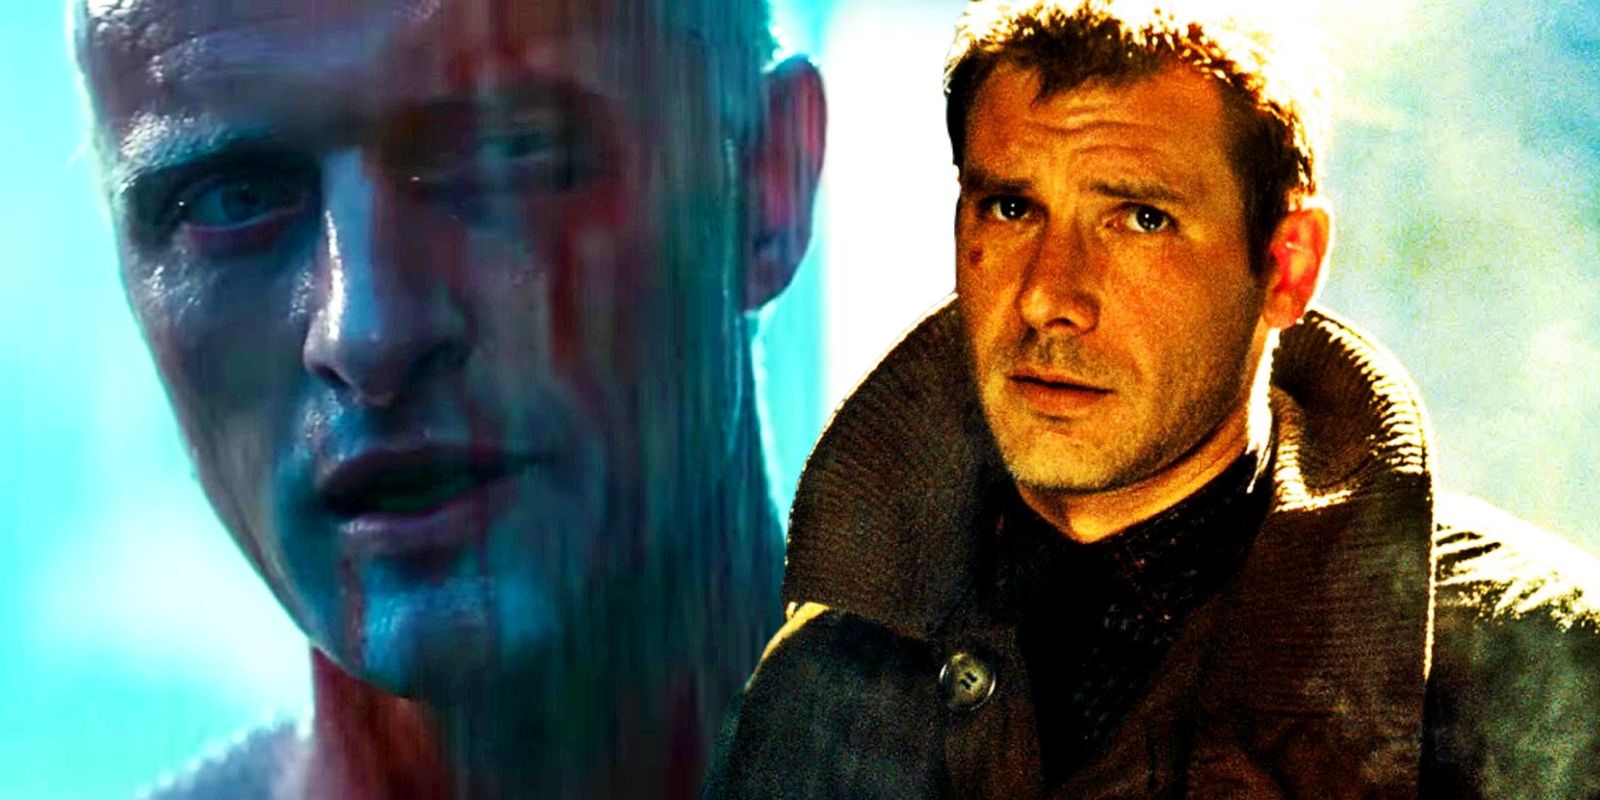 La mejor línea de Blade Runner es uno de los mejores momentos de películas improvisadas